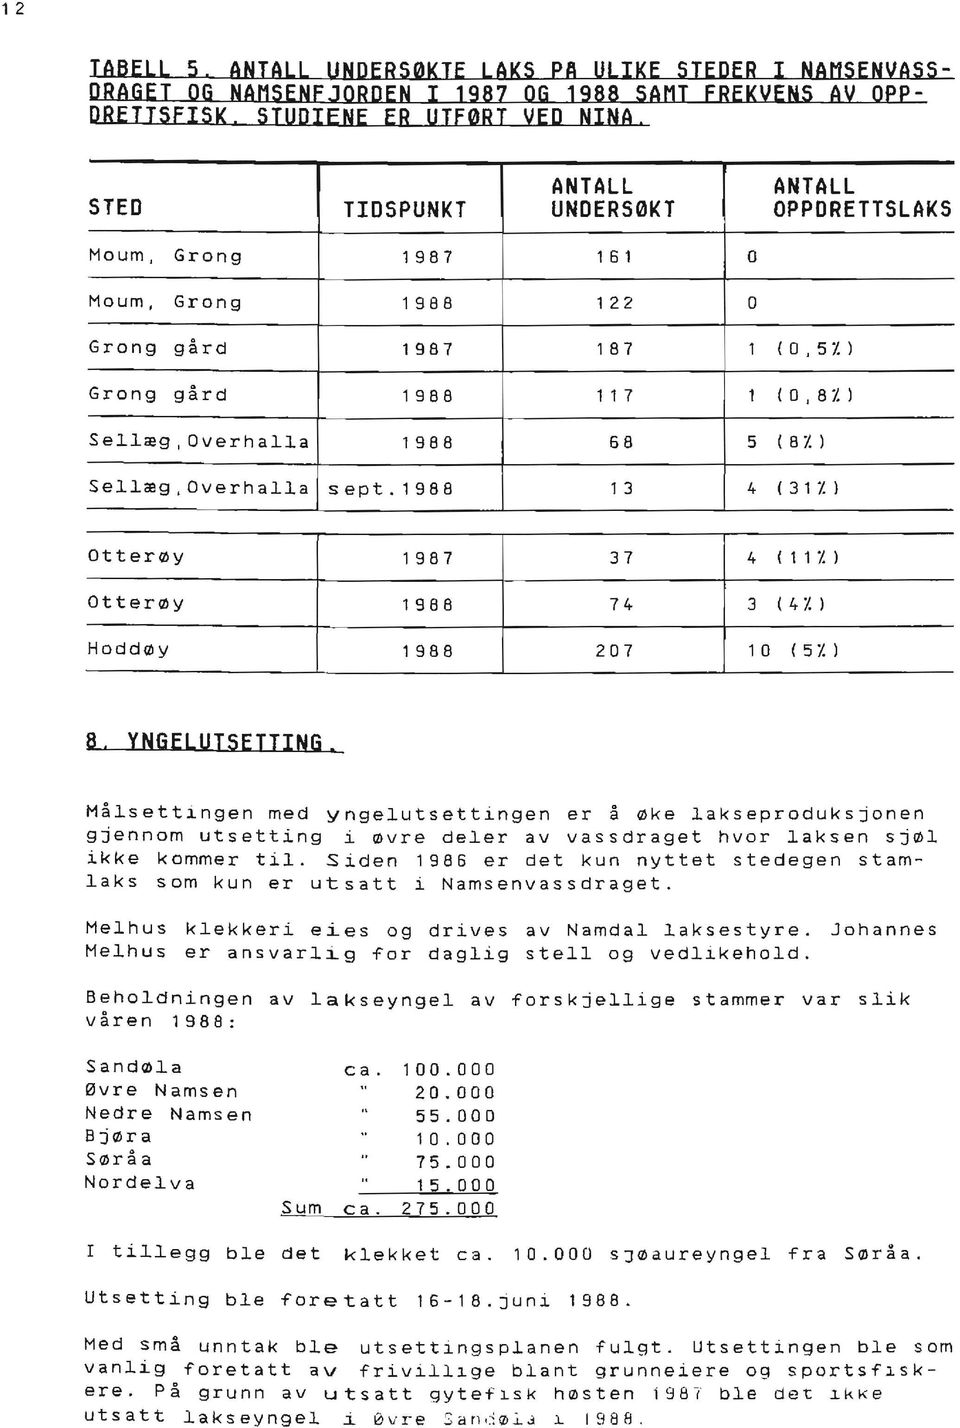 Z ) Sellæg,Overhalla sept.1988 1 3 4 ( 3 1 Z ) Otterøy 1987 37 4 ( 1 1 Z ) Otterøy 1988 74 3 ( 4 /. ) Hoddøy 1988 207 1 O ( 5 /. ) 8.